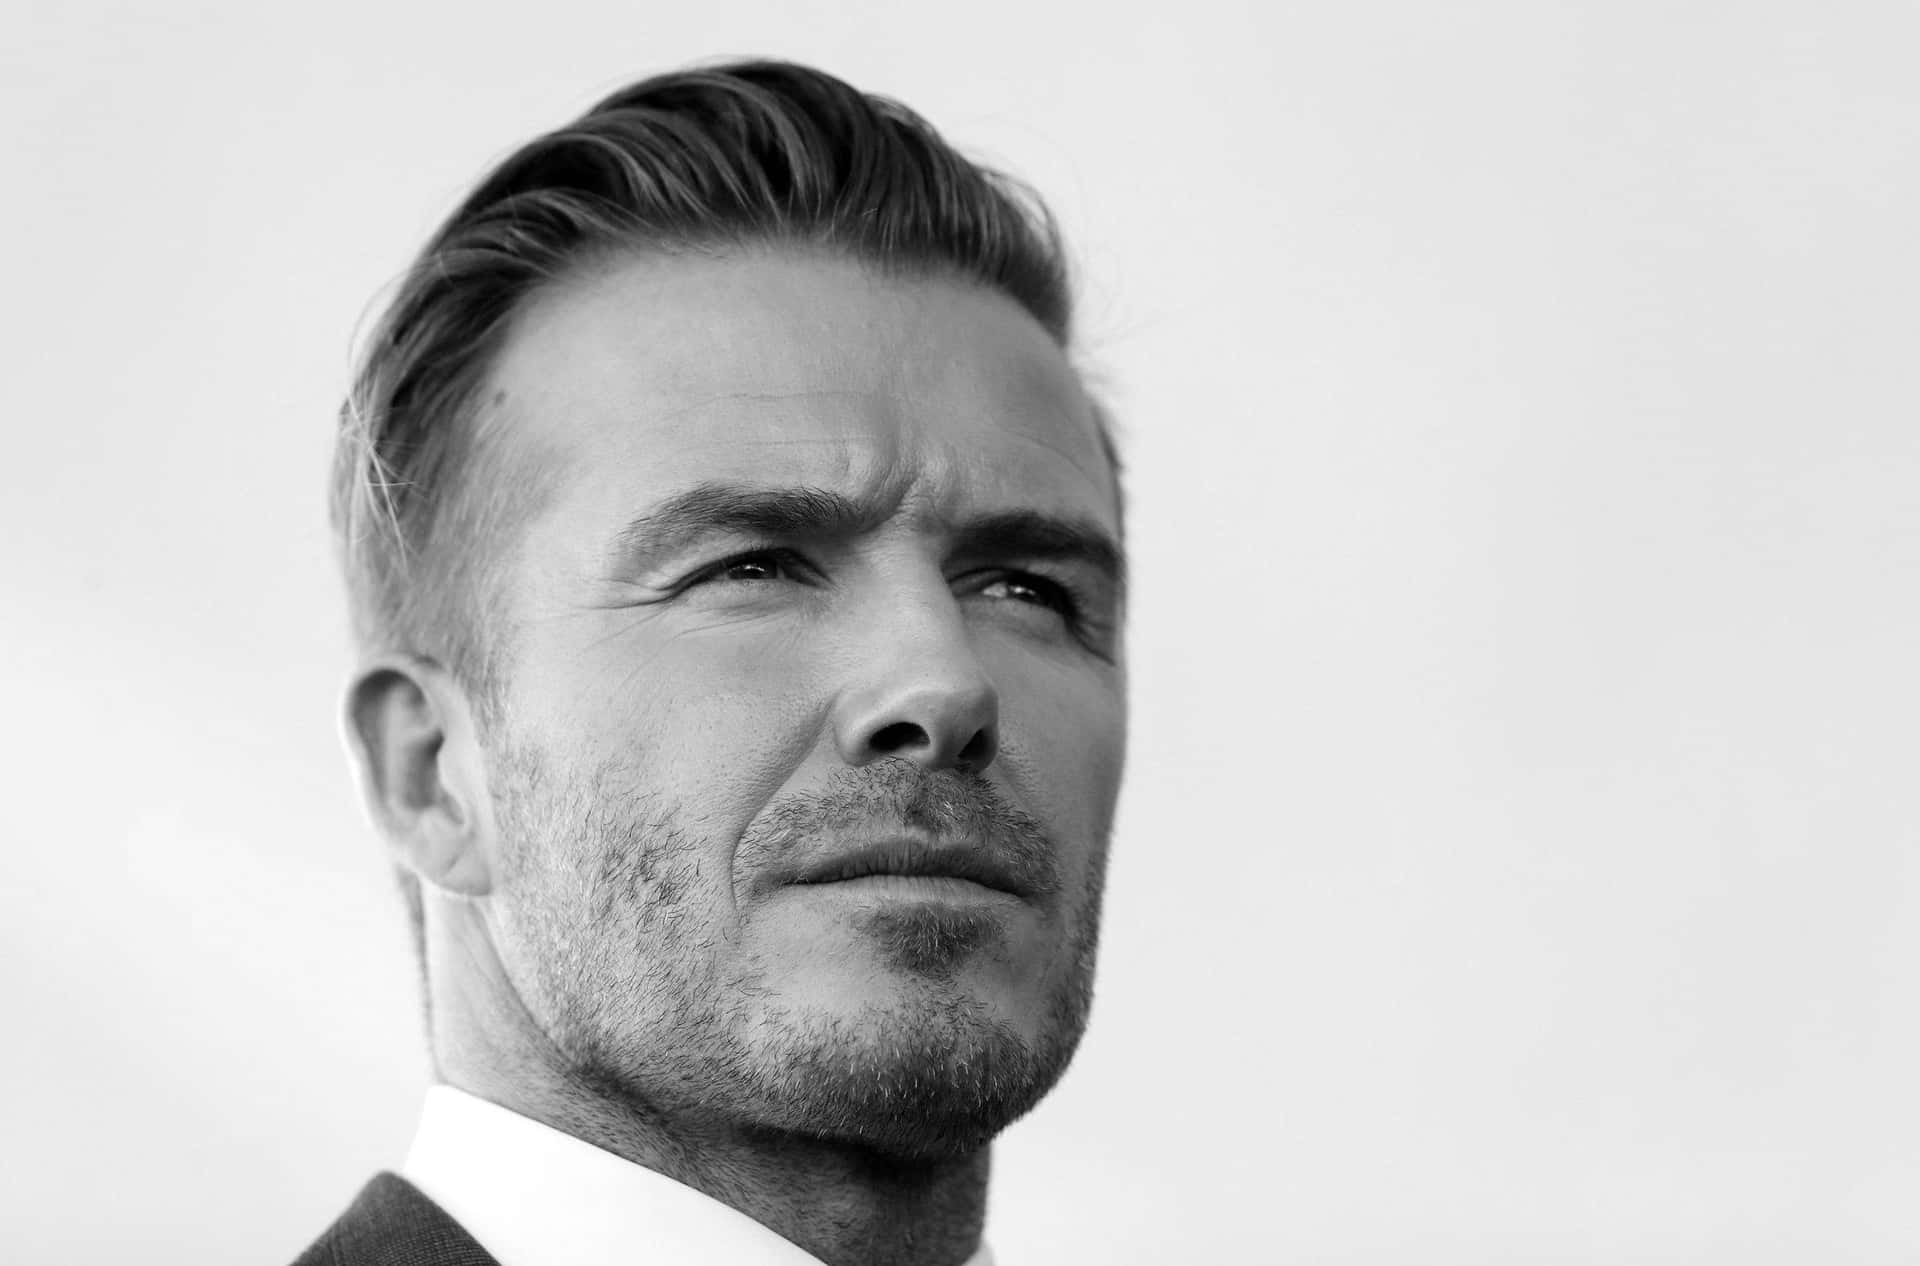 Dapper Hairstyle Of David Beckham Wallpaper